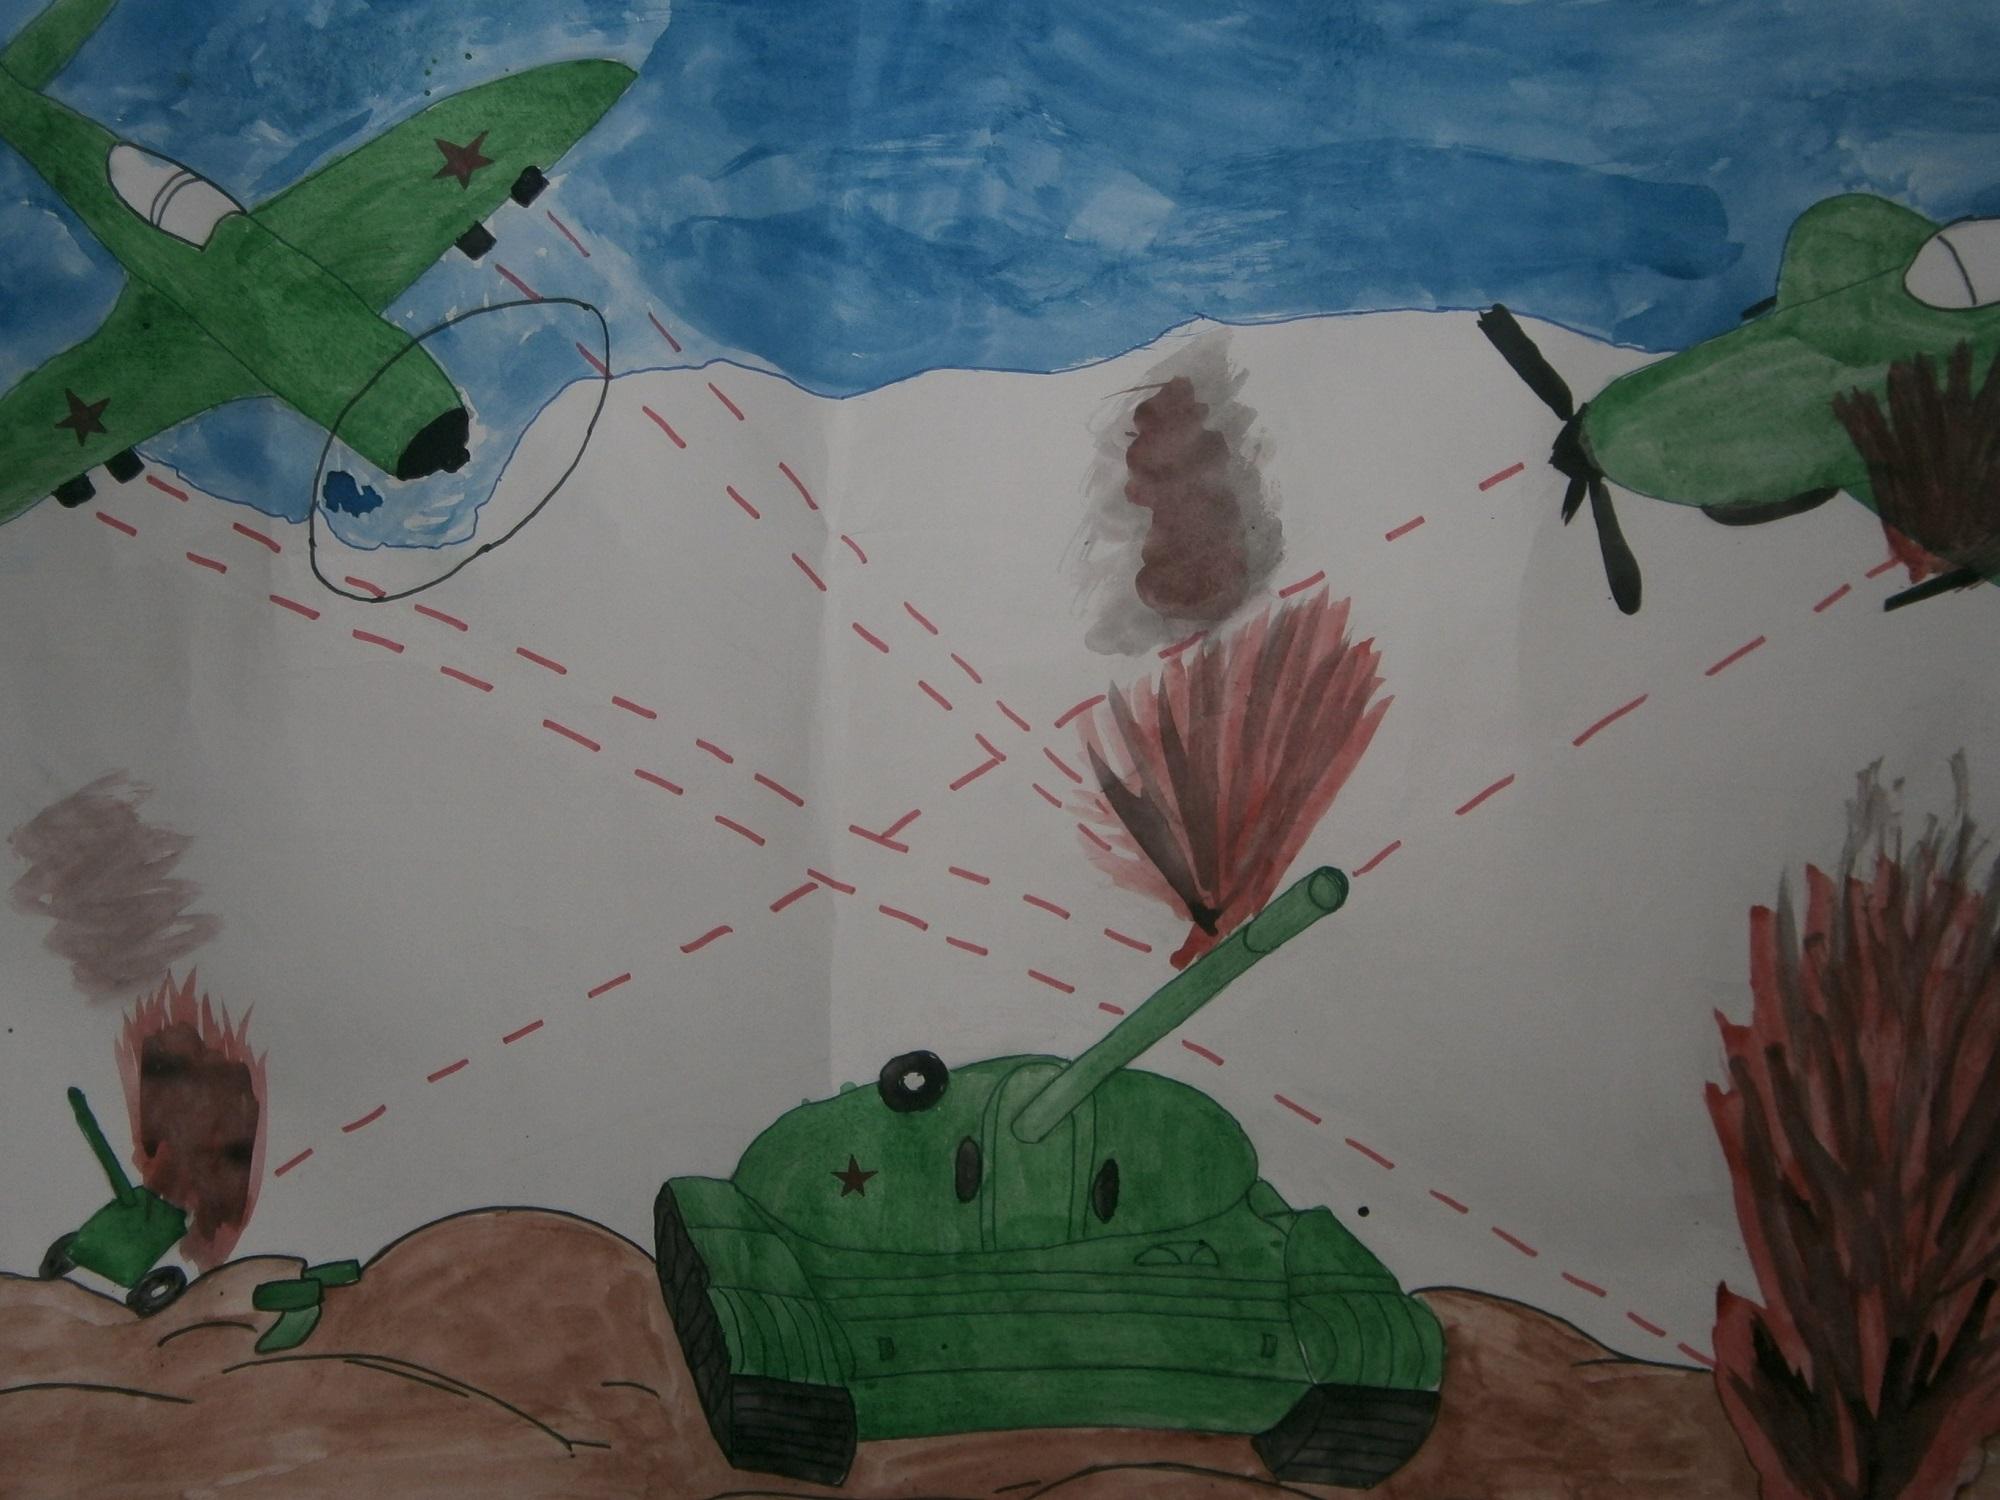 Поделки своими руками 9 мая день победы. Рисунок детски с танком и самолетами про войну Поделки на праздники